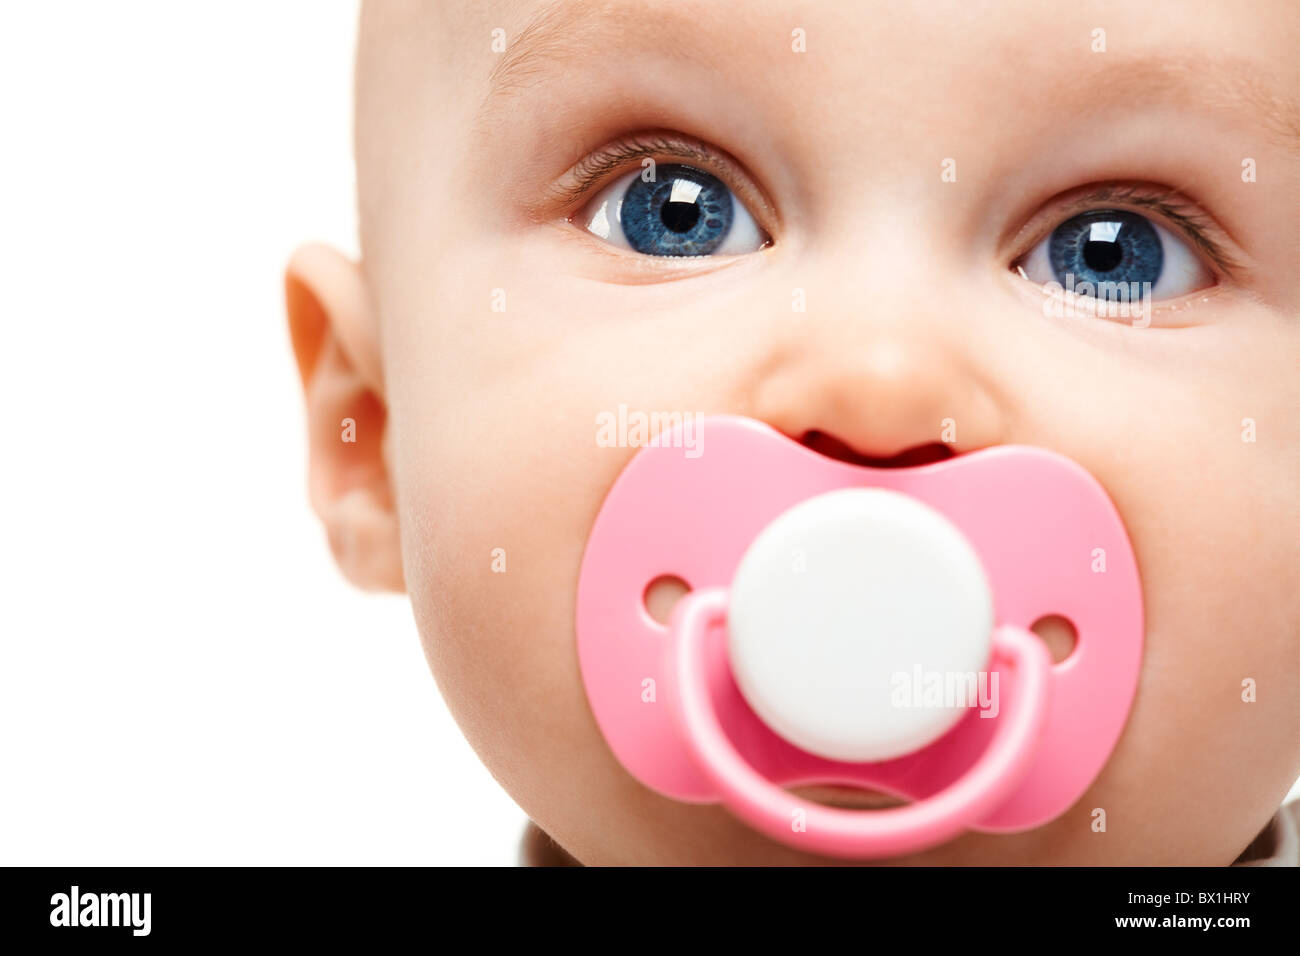 Adorable rostro del bebé con el chupete en la boca mirando a la cámara Foto de stock